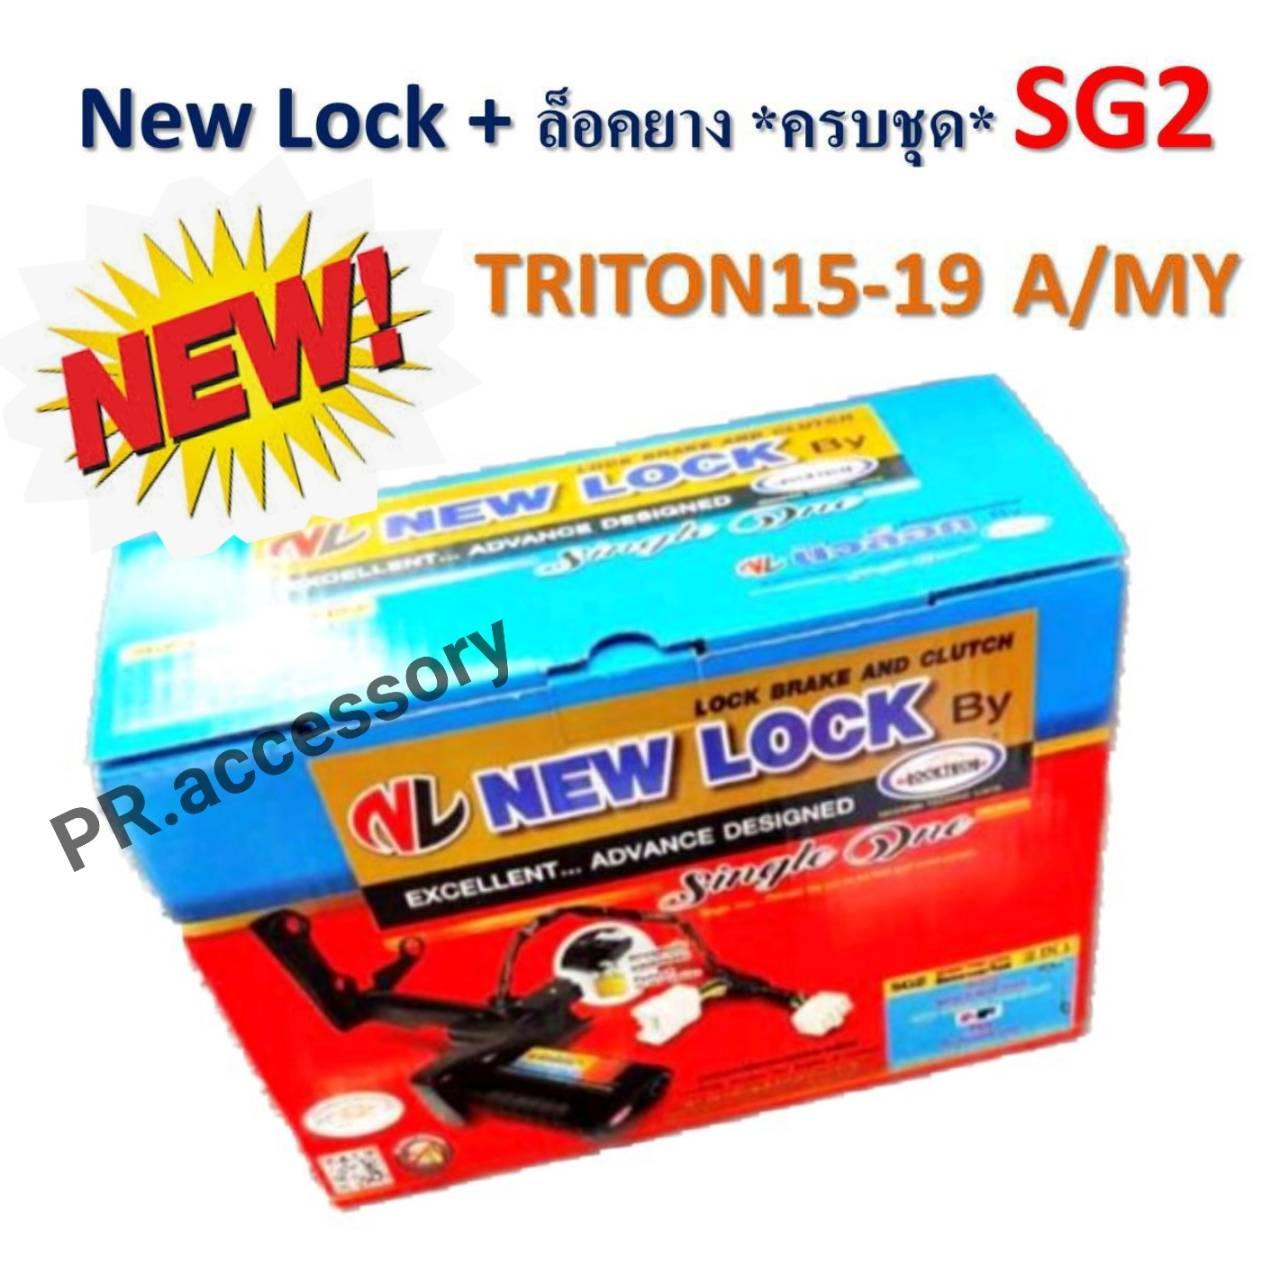 New Lock + ล็อคยางอะไหล่ ระบบกุญแจ ความปลอดภัยสูง SG2 TRITON 2015-2019 A/MY